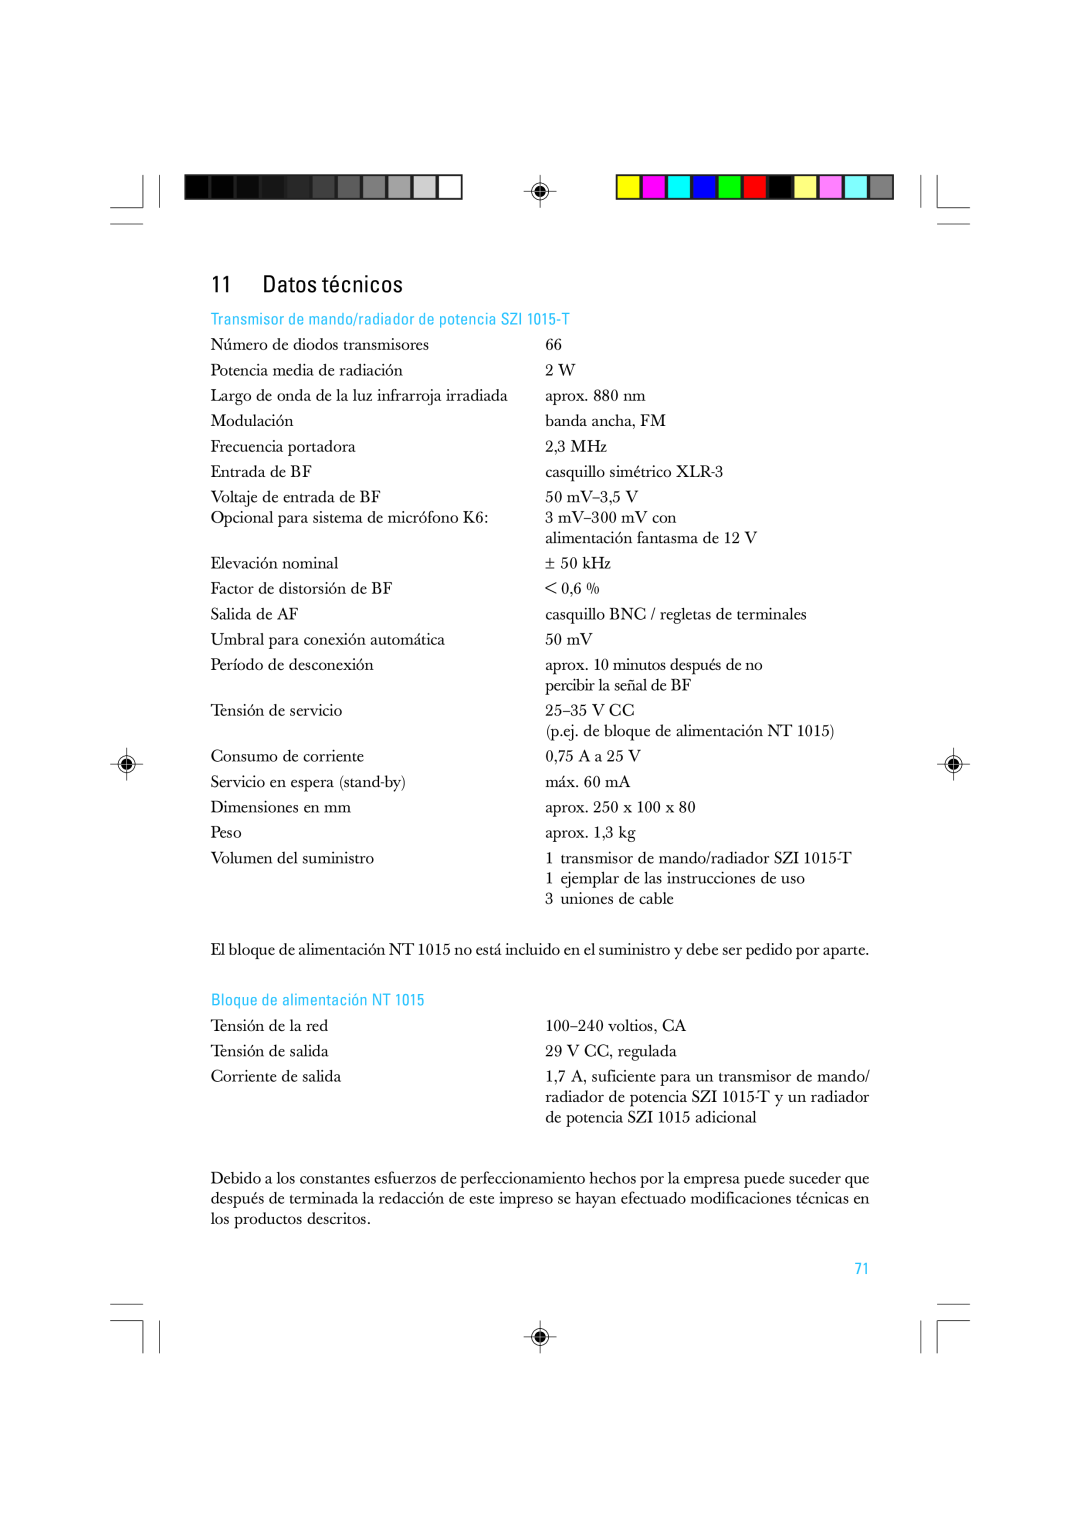 Sennheiser SZI 1015-T manual Datos técnicos, Bloque de alimentación NT 